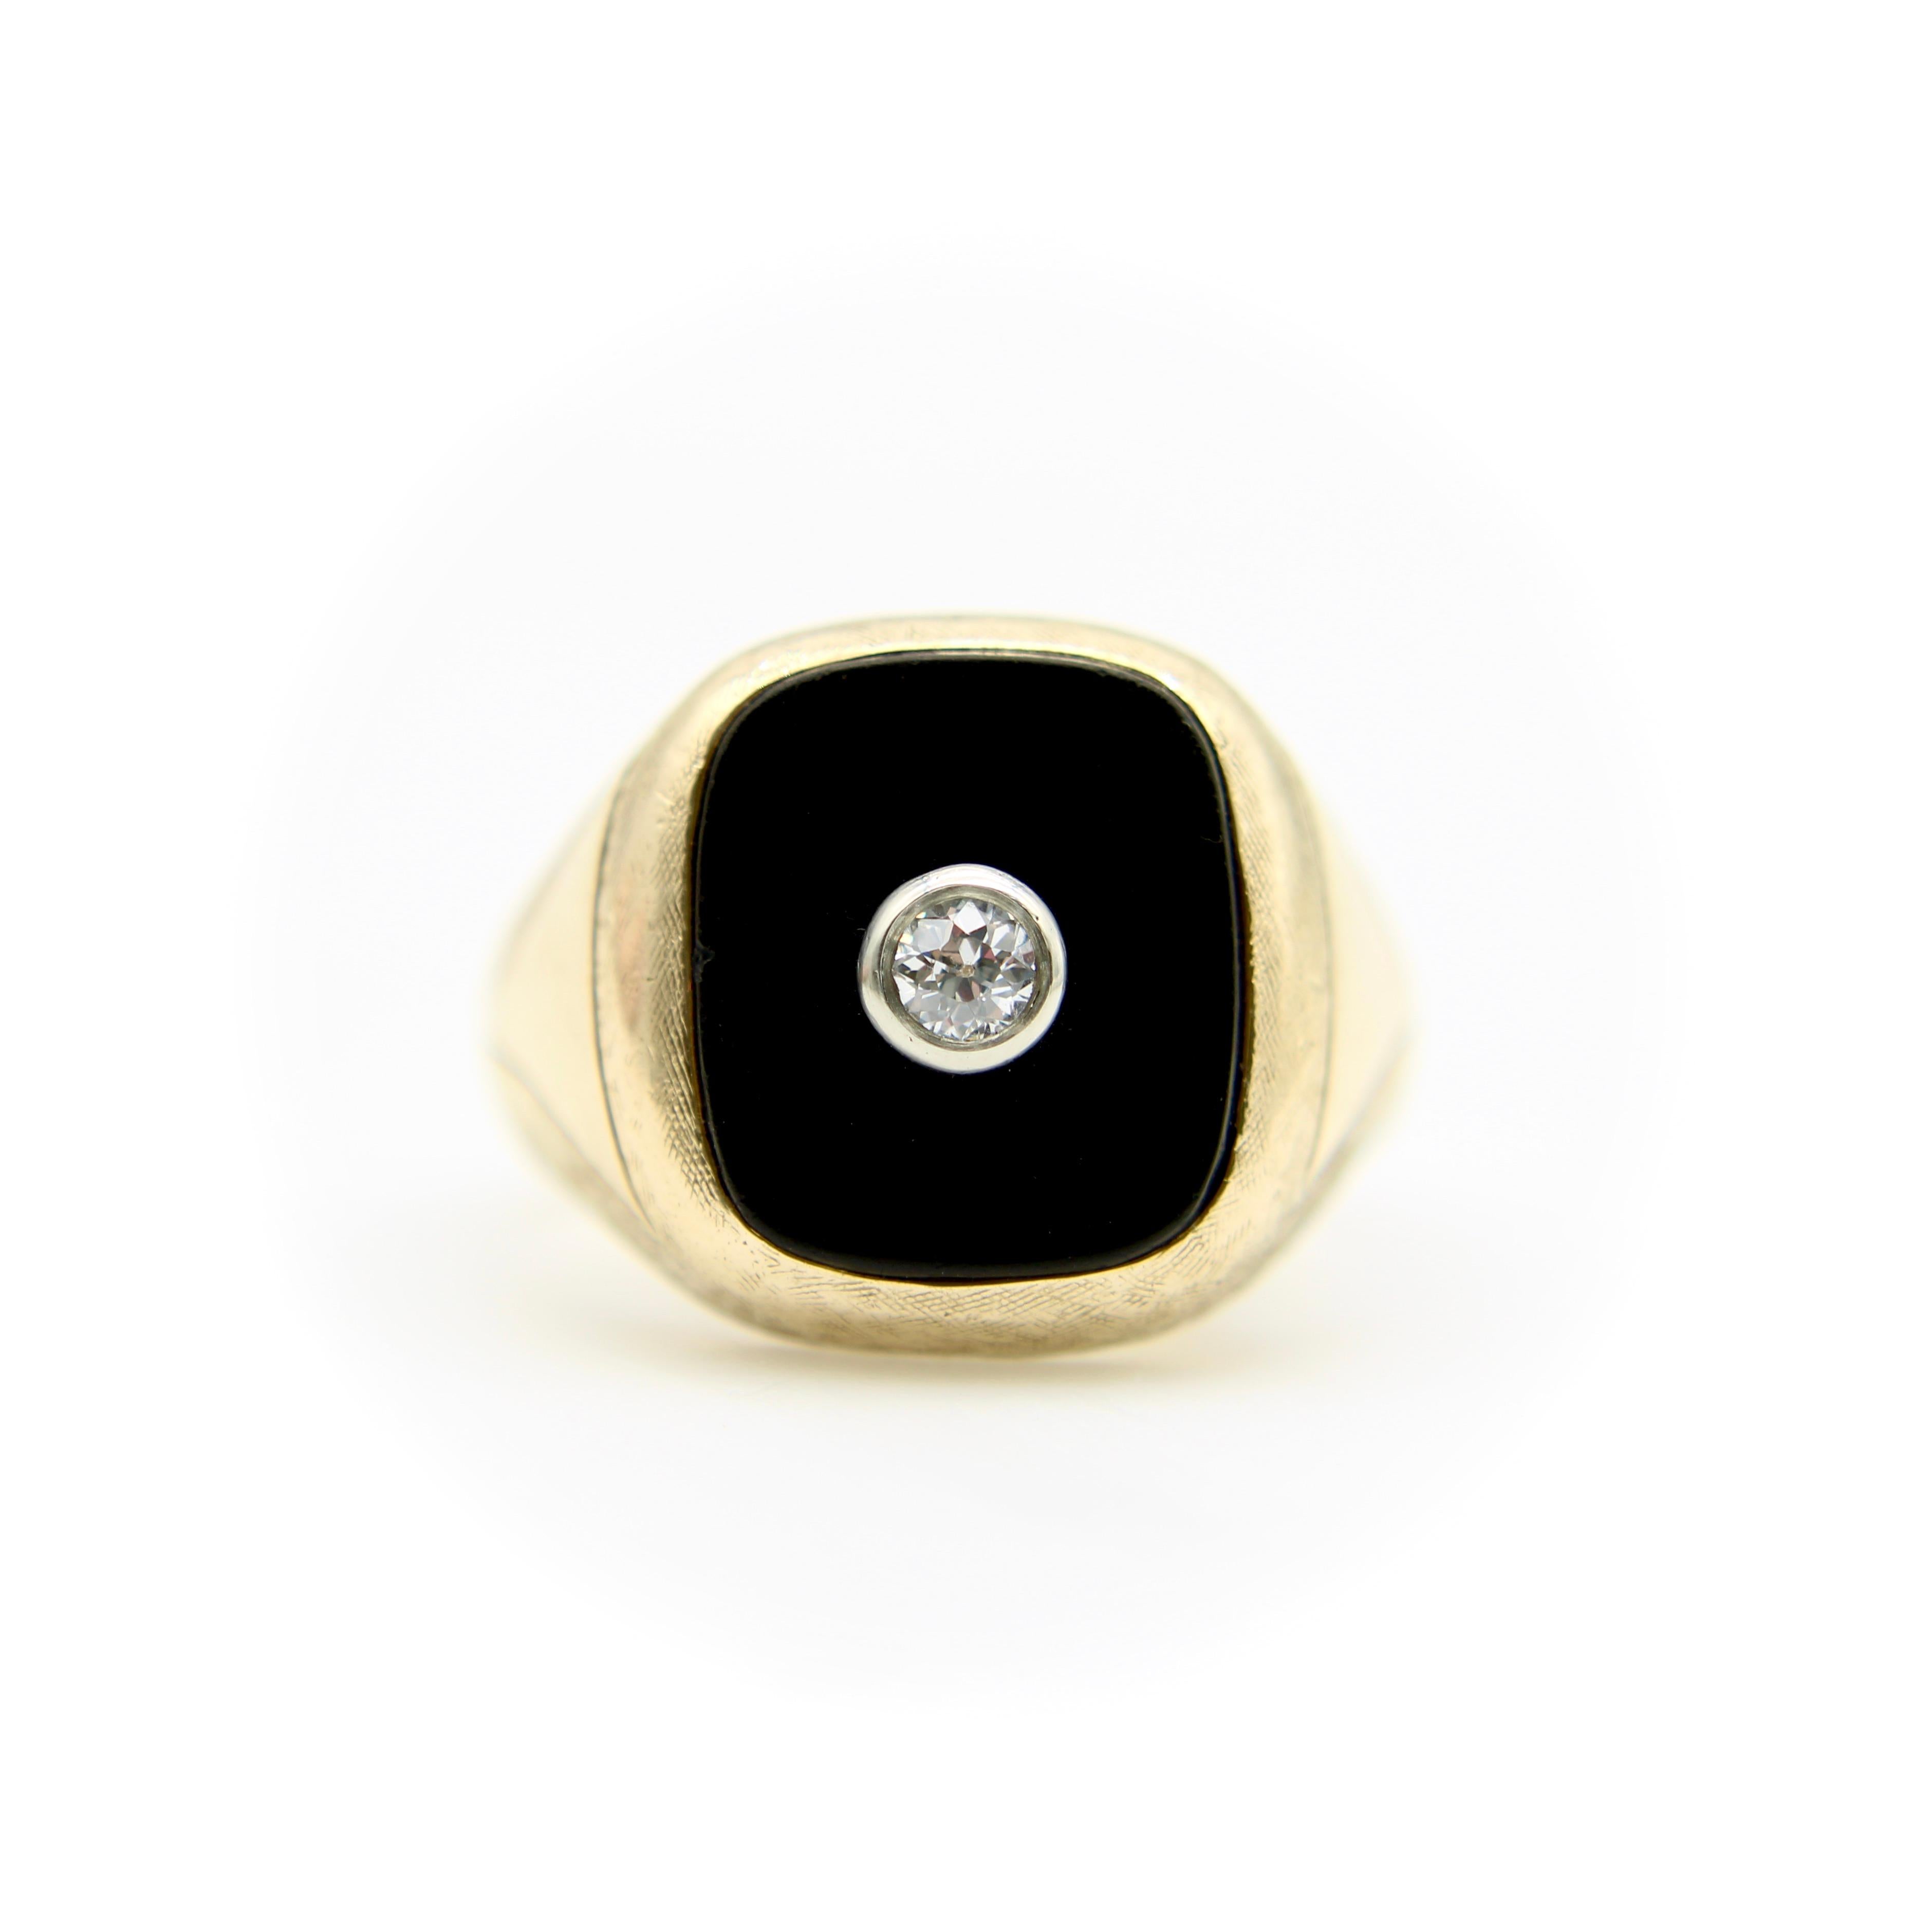 Dies ist ein klassischer Art-Déco-Herrenring, etwa aus den 1920er Jahren. Der Ring aus 14-karätigem Gold hat eine rechteckige Onyxplatte mit abgerundeten Ecken. In der Mitte befindet sich ein Diamant im Old European Cut, der in Platin gefasst ist.